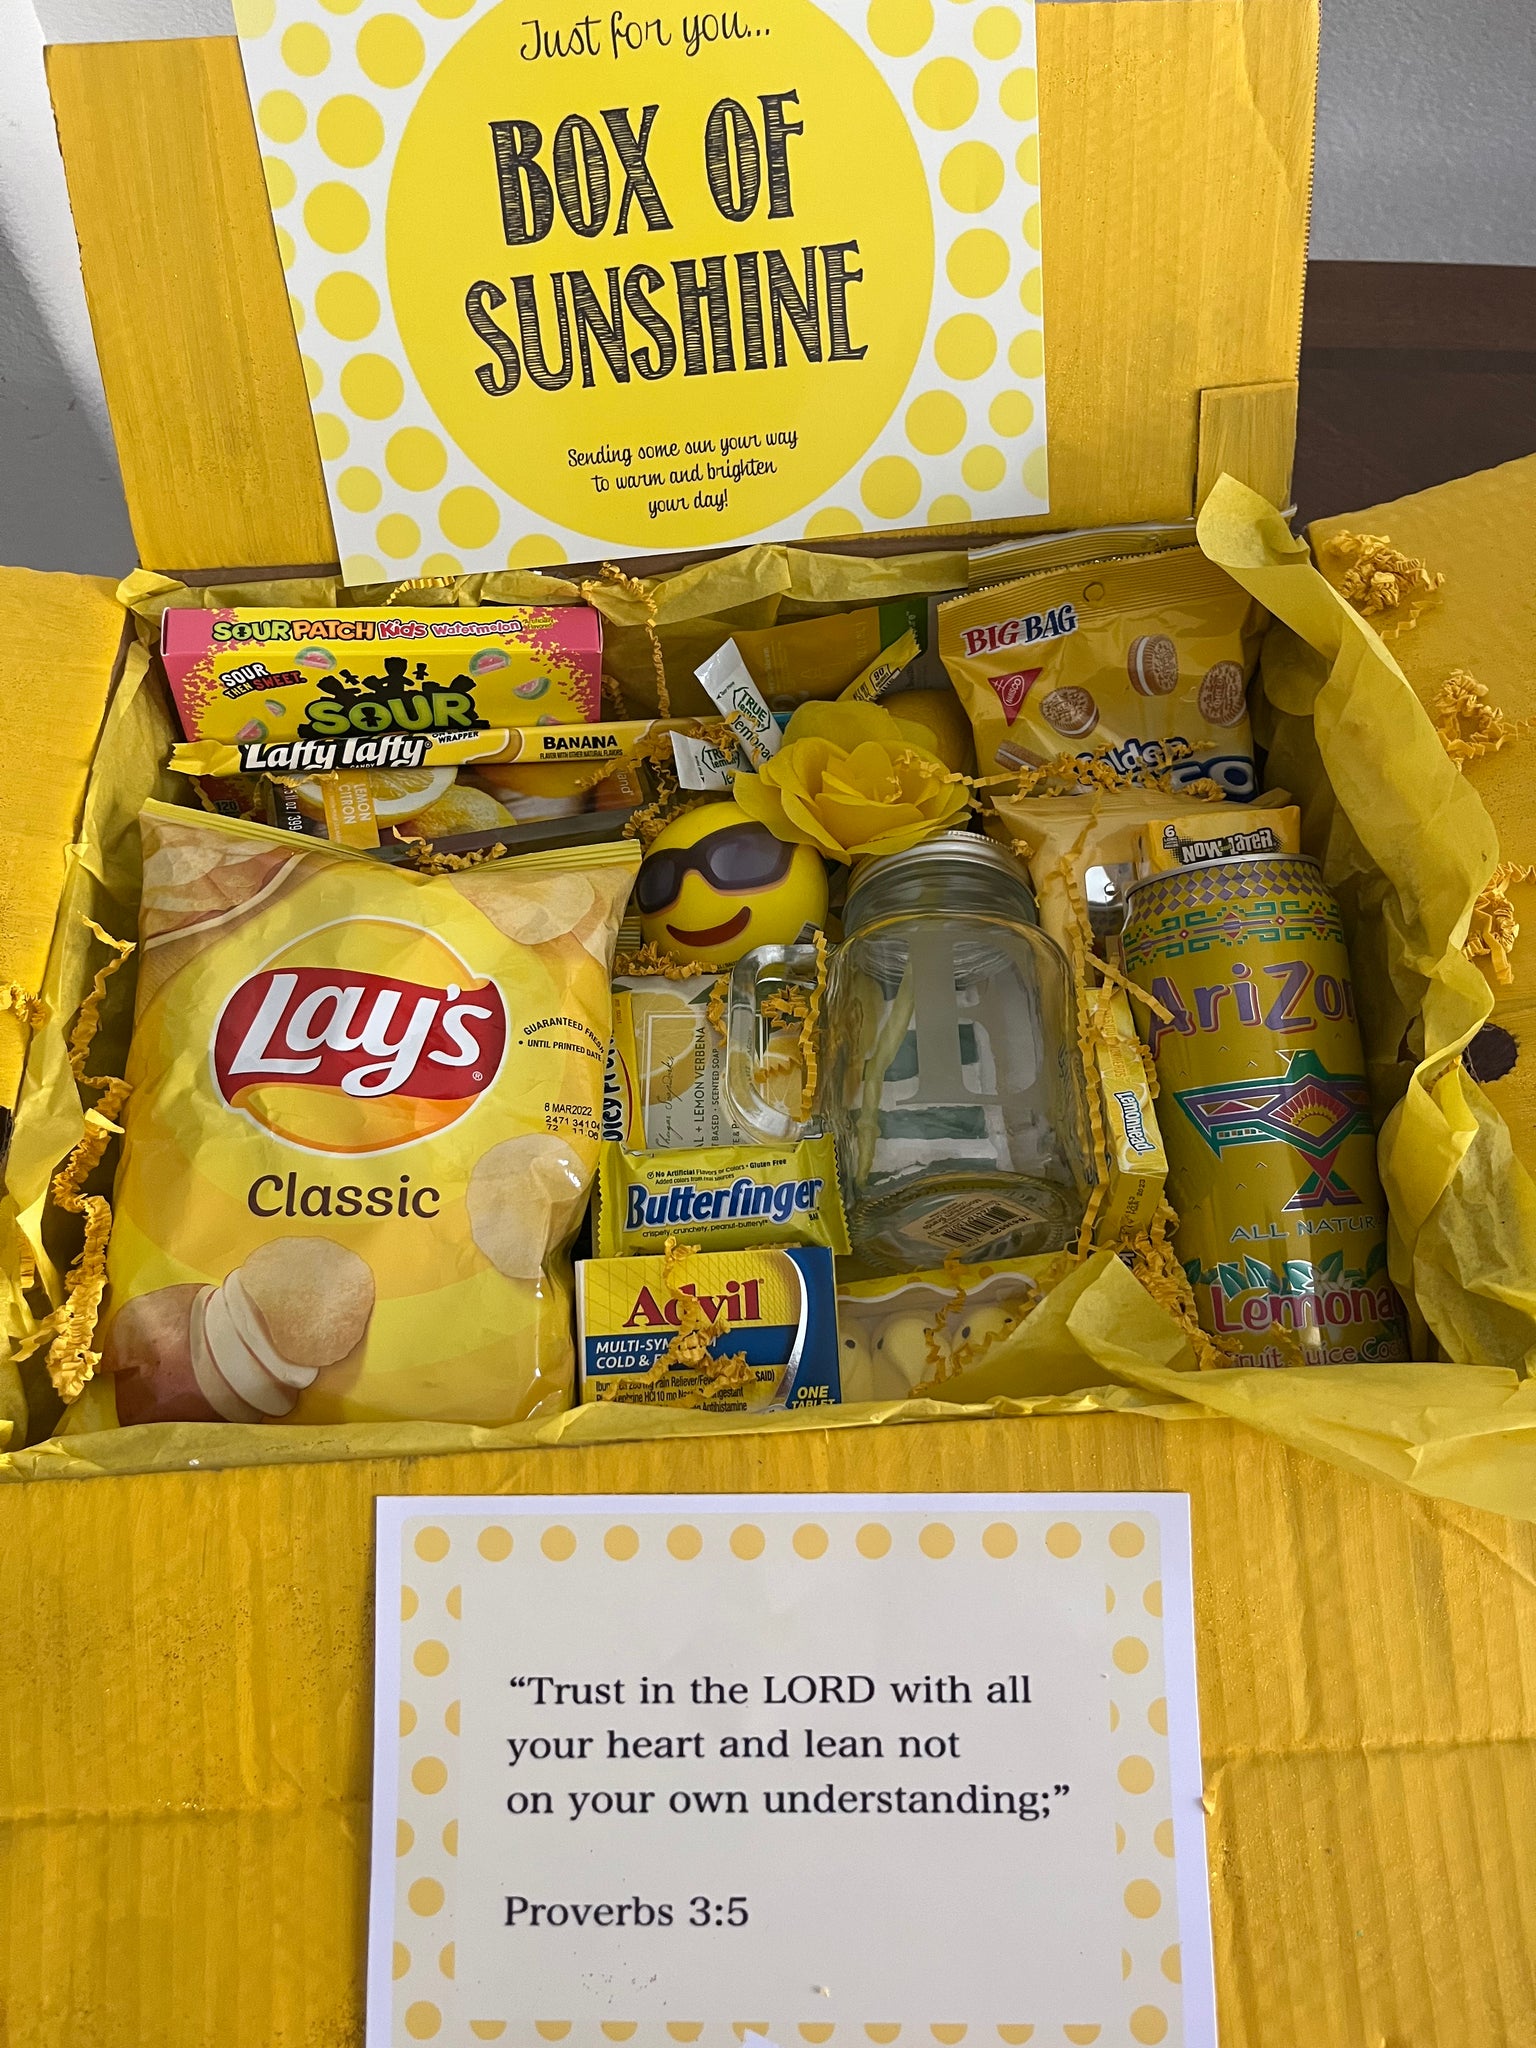 Box of Sunshine to Brighten Someone’s Day